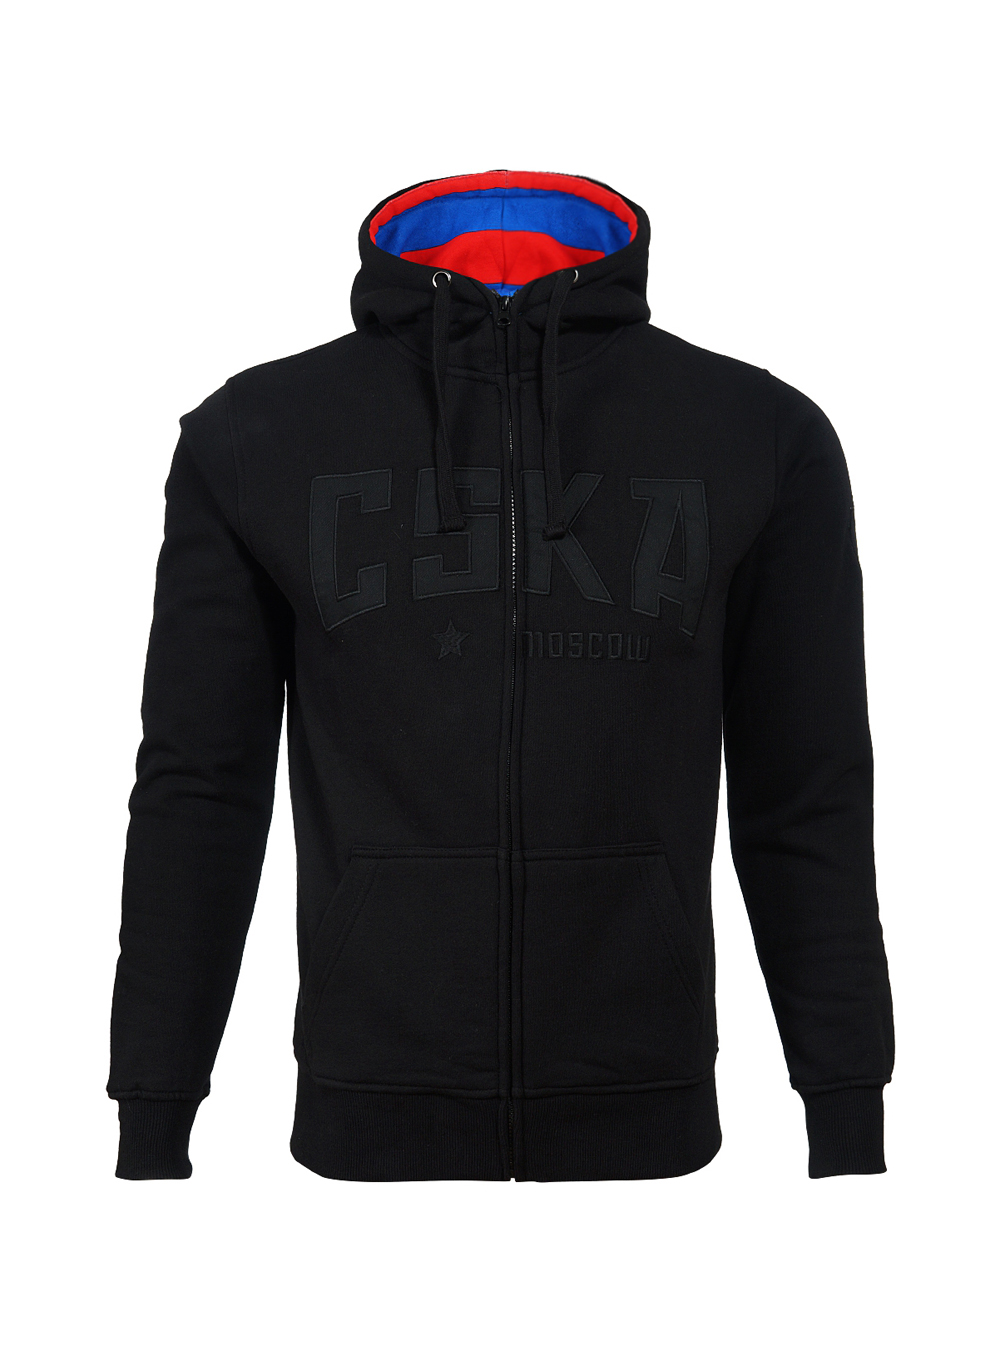 Толстовка на молнии с капюшоном "CSKA", цвет черный (L) от Cskashop